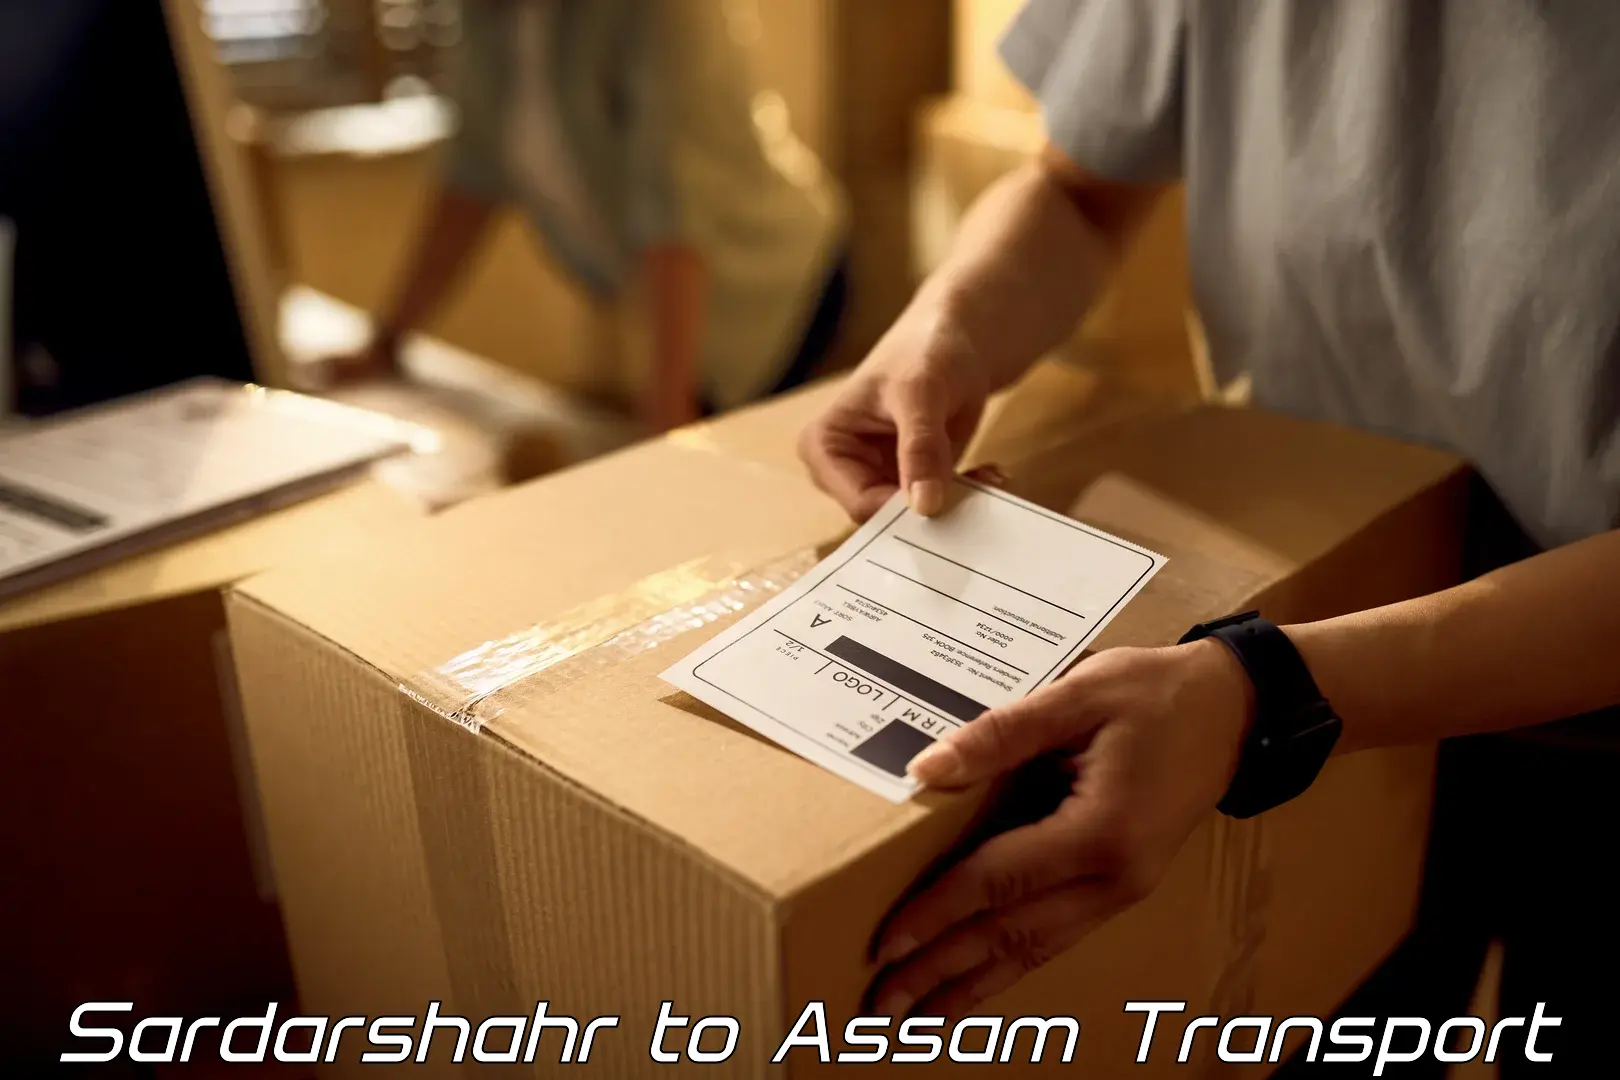 Nearest transport service Sardarshahr to Assam